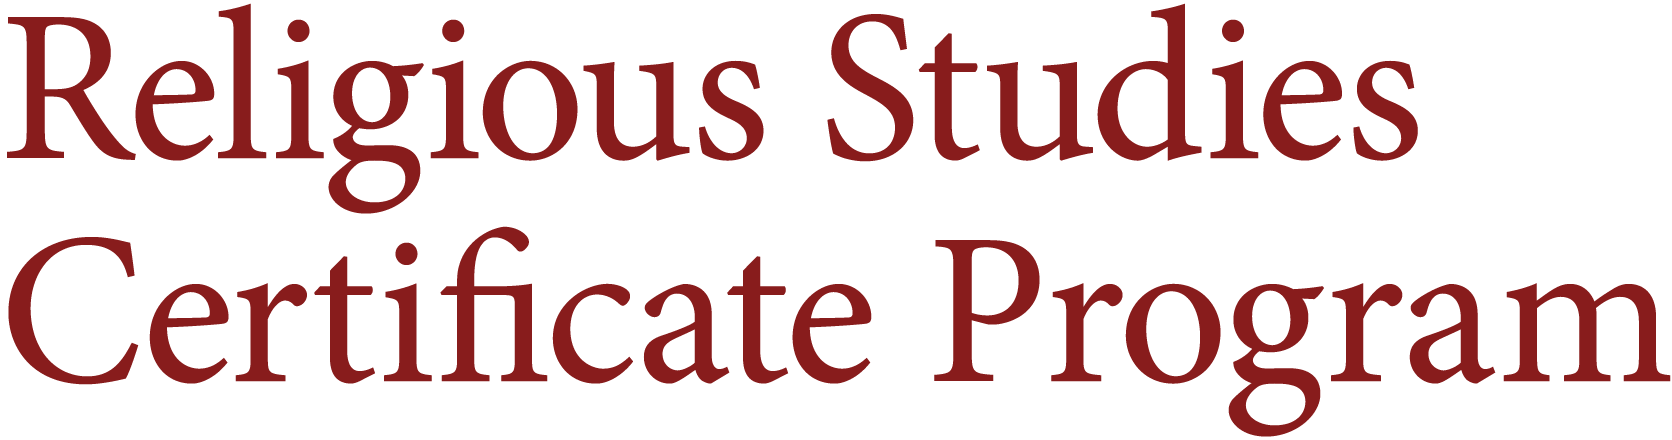 Religious Studies Certificate Program